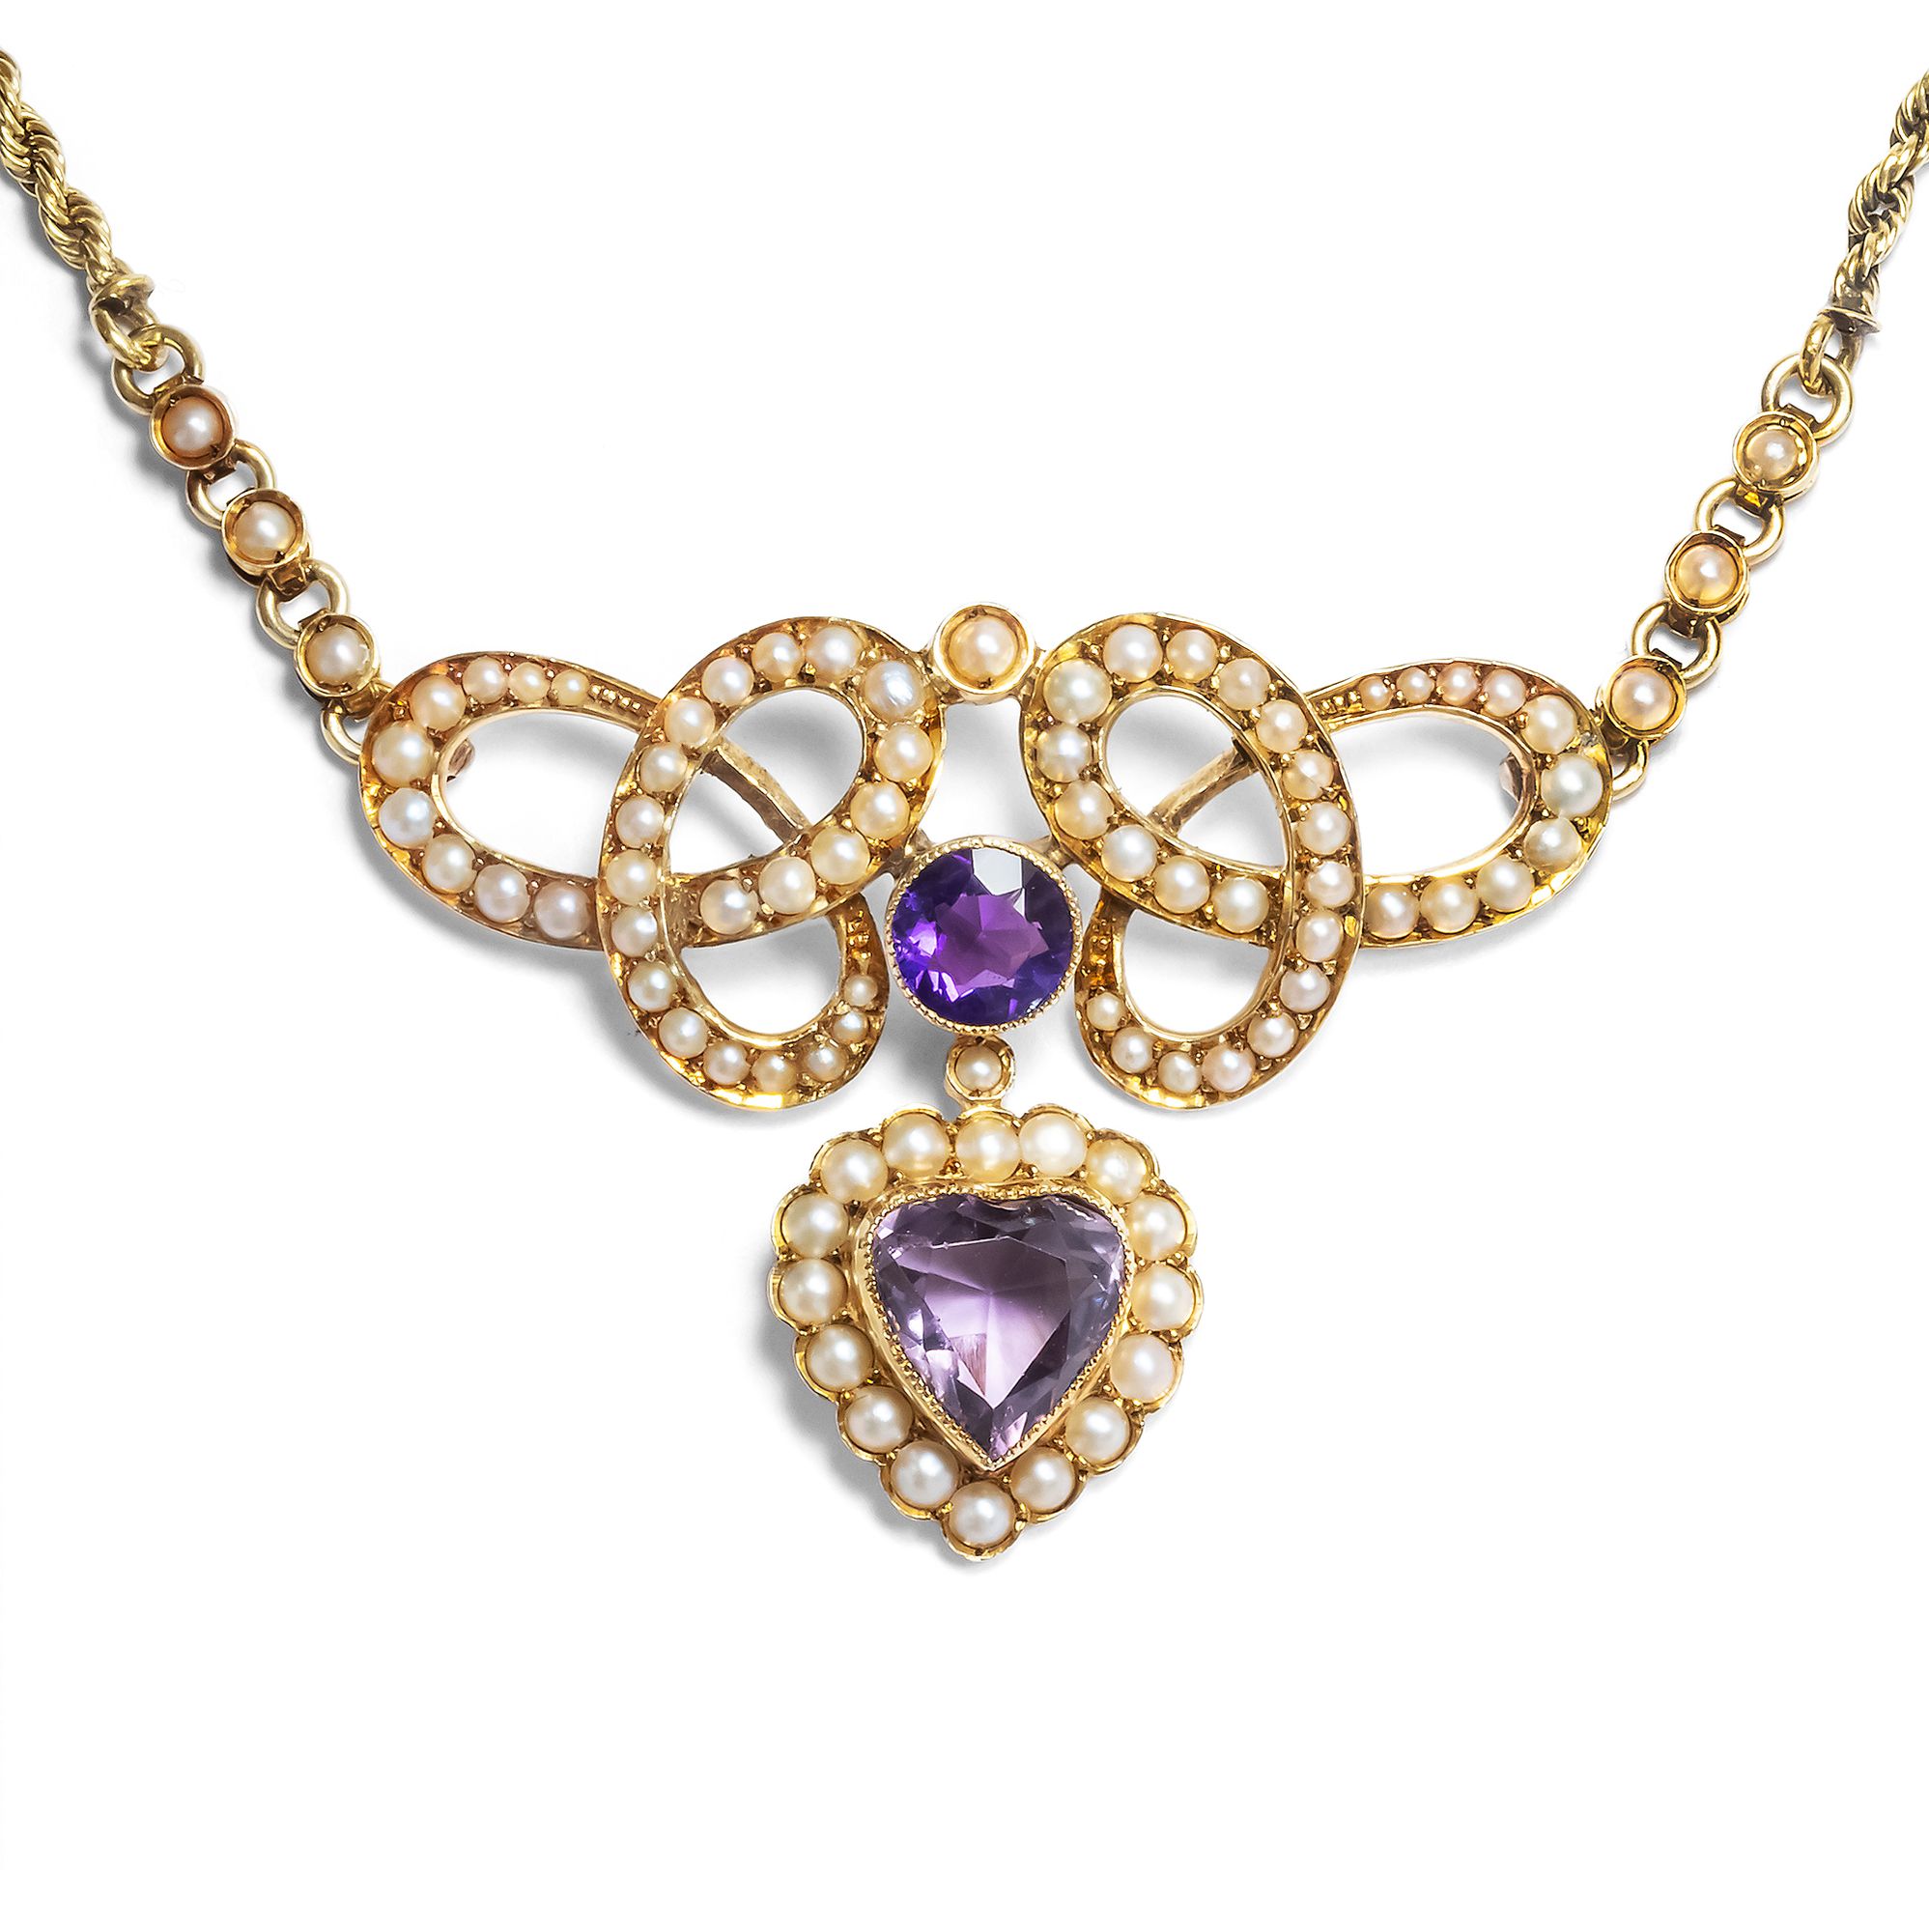 Romantisches Collier mit Amethyst & Perlen in Gold, Großbritannien um 1900